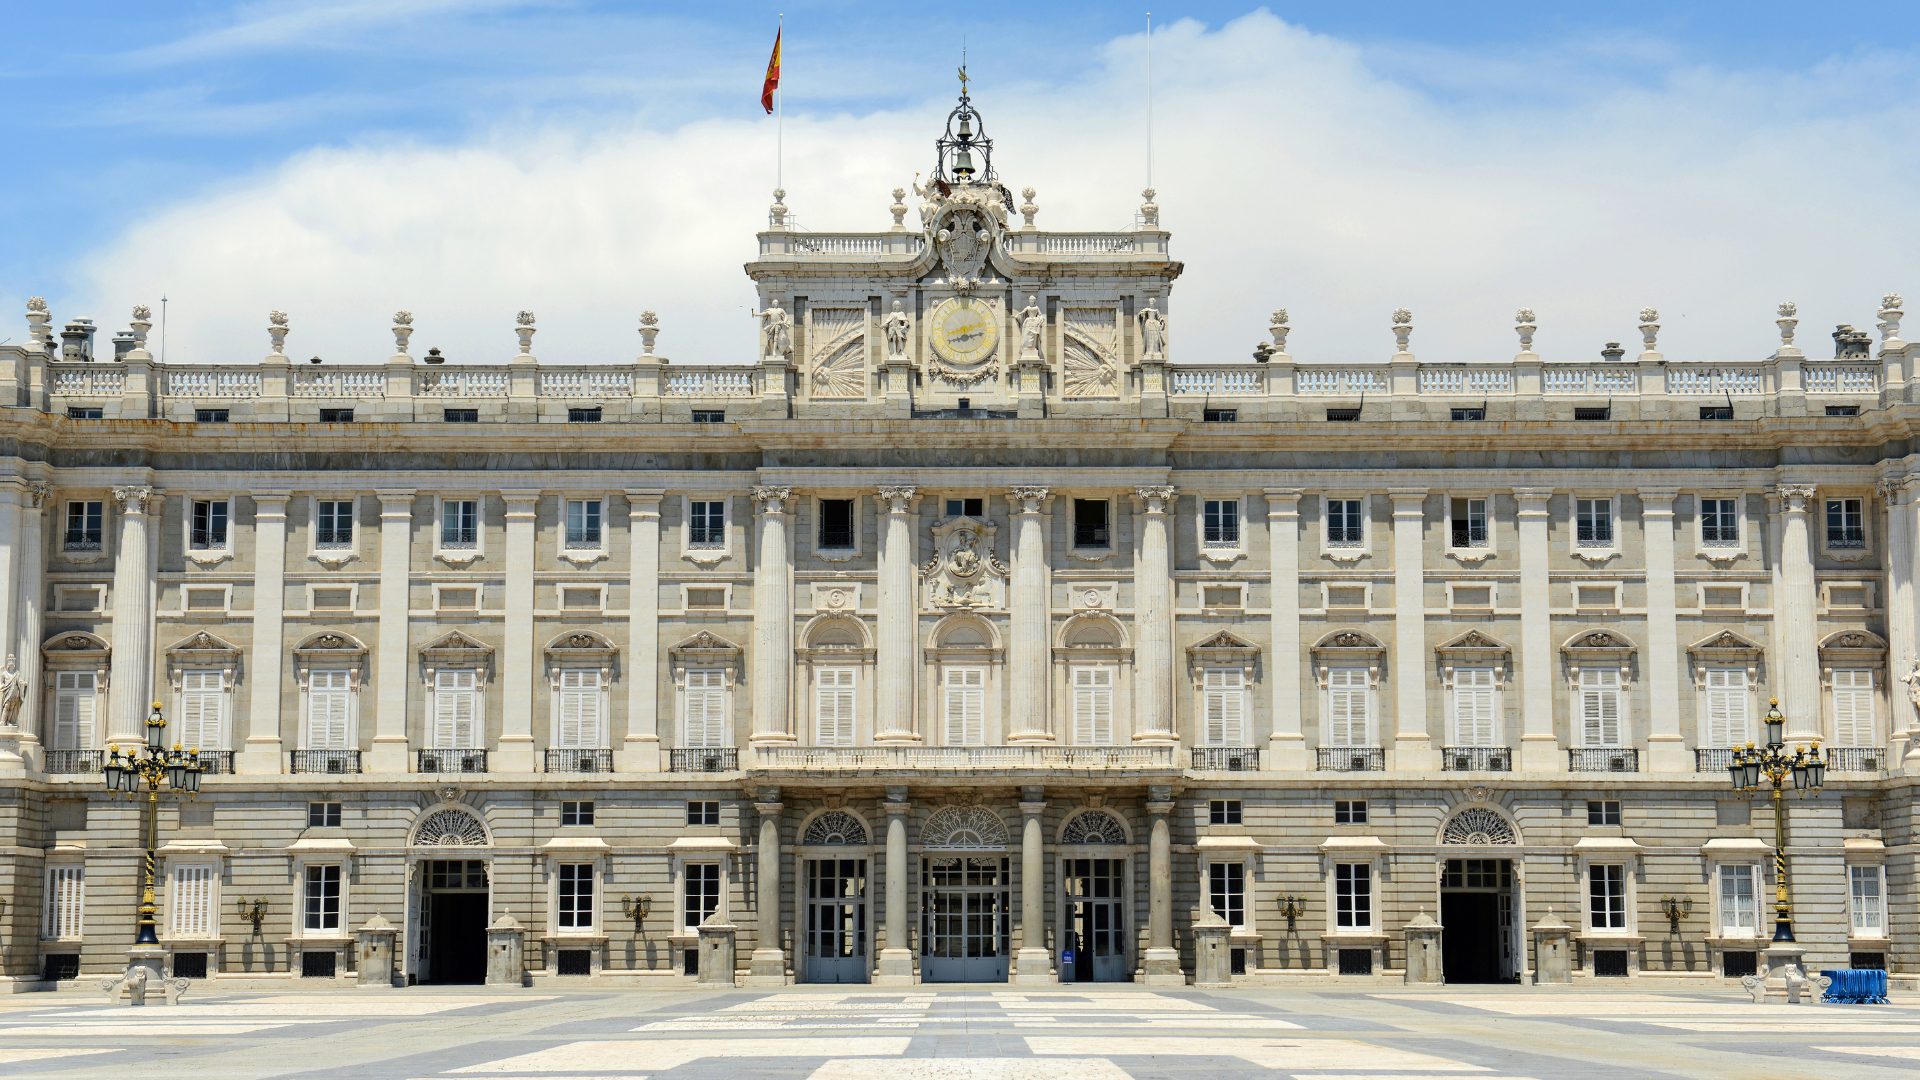 Palácio Real